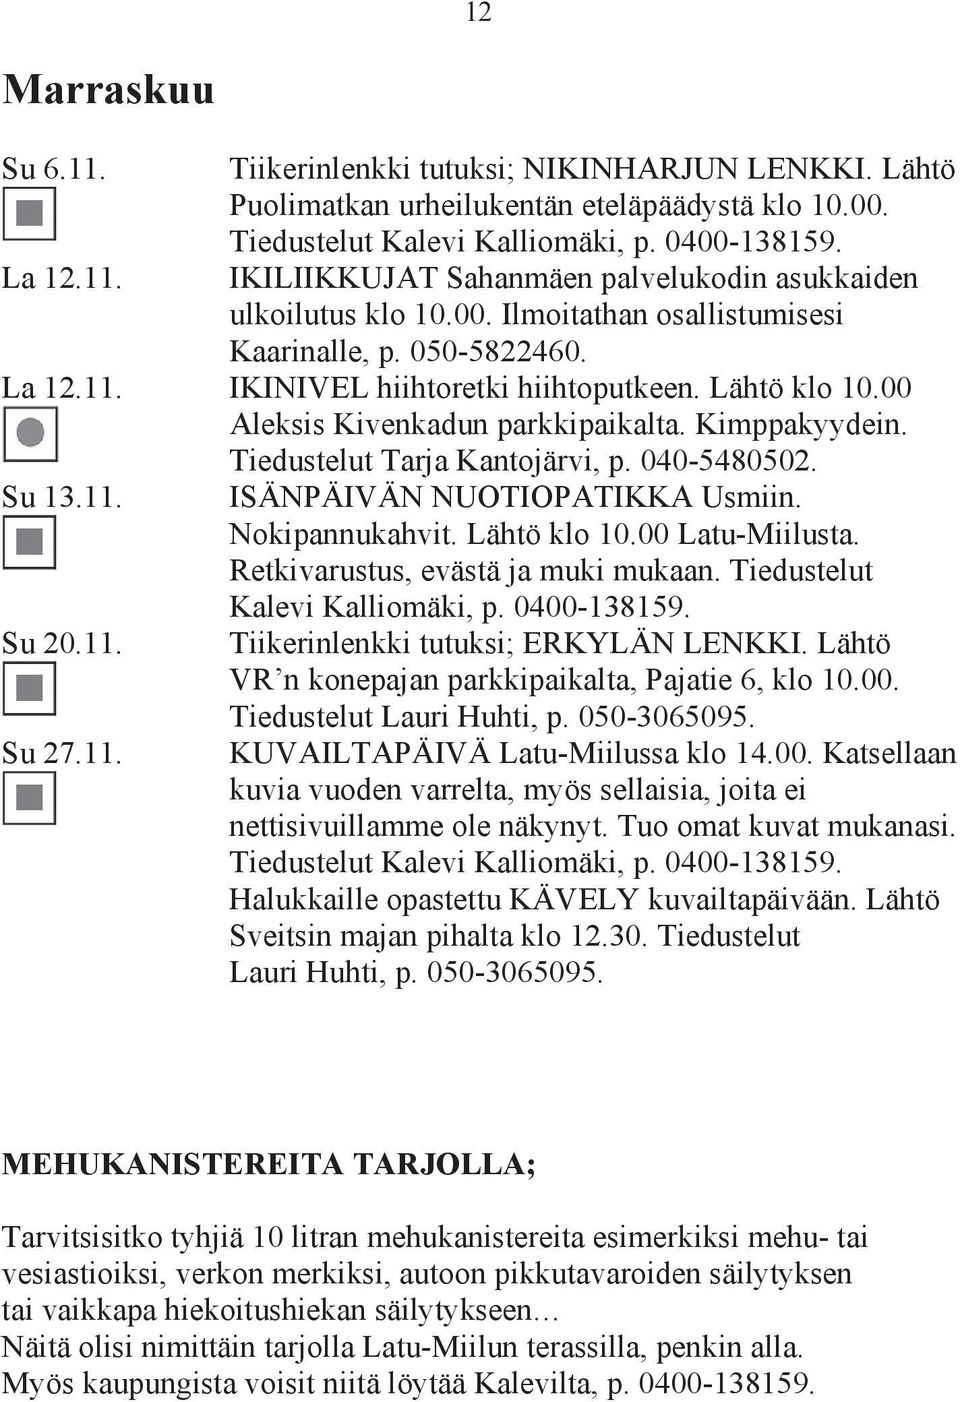 00 Aleksis Kivenkadun parkkipaikalta. Kimppakyydein. Tiedustelut Tarja Kantojärvi, p. 040-5480502. Su 13.11. Su 20.11. Su 27.11. ISÄNPÄIVÄN NUOTIOPATIKKA Usmiin. Nokipannukahvit. Lähtö klo 10.